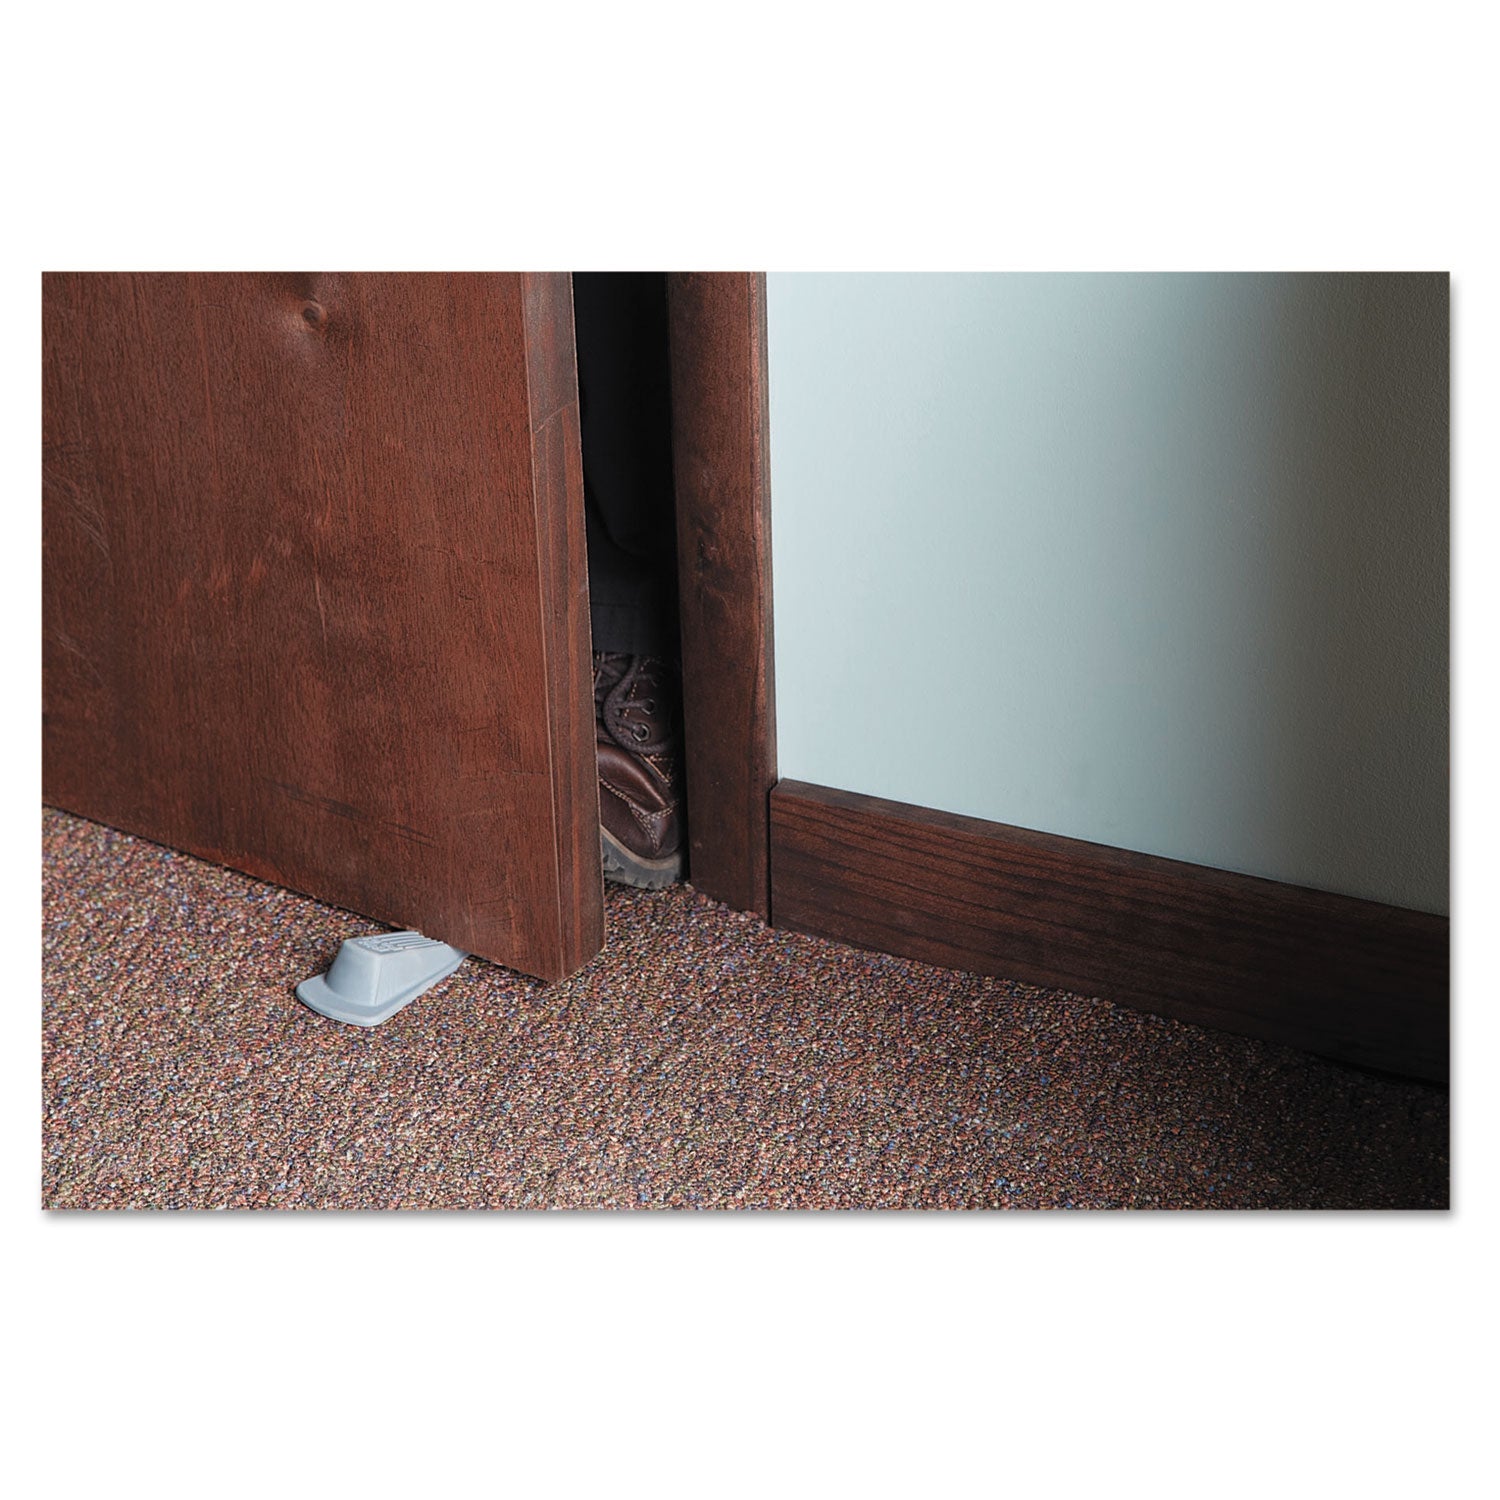 Big Foot Doorstop, No Slip Rubber Wedge, 2.25w x 4.75d x 1.25h, Gray - 